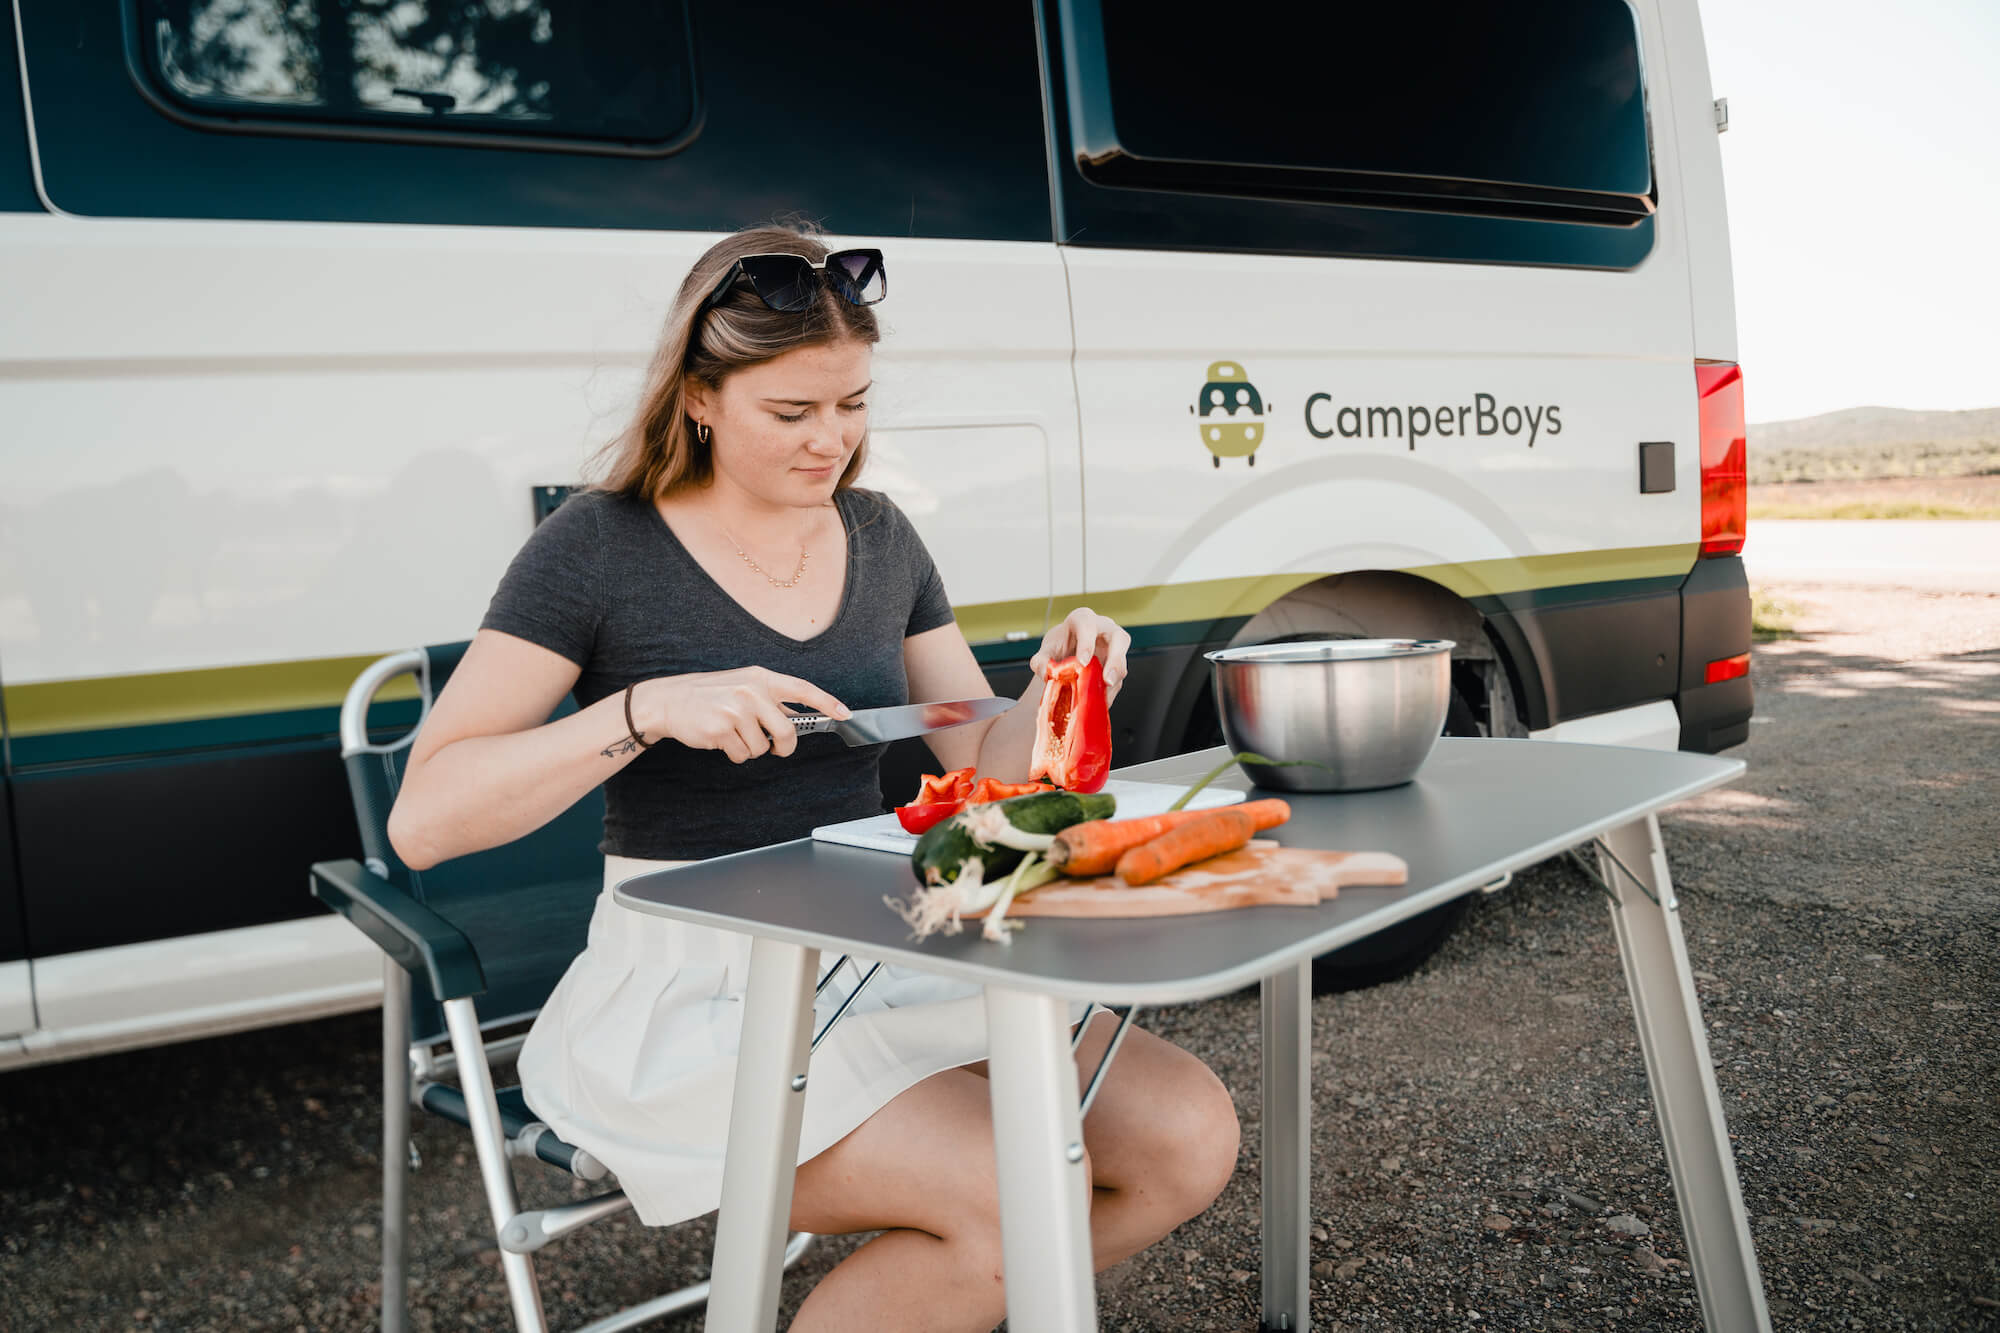 Frau macht Essen vor einem Campervan